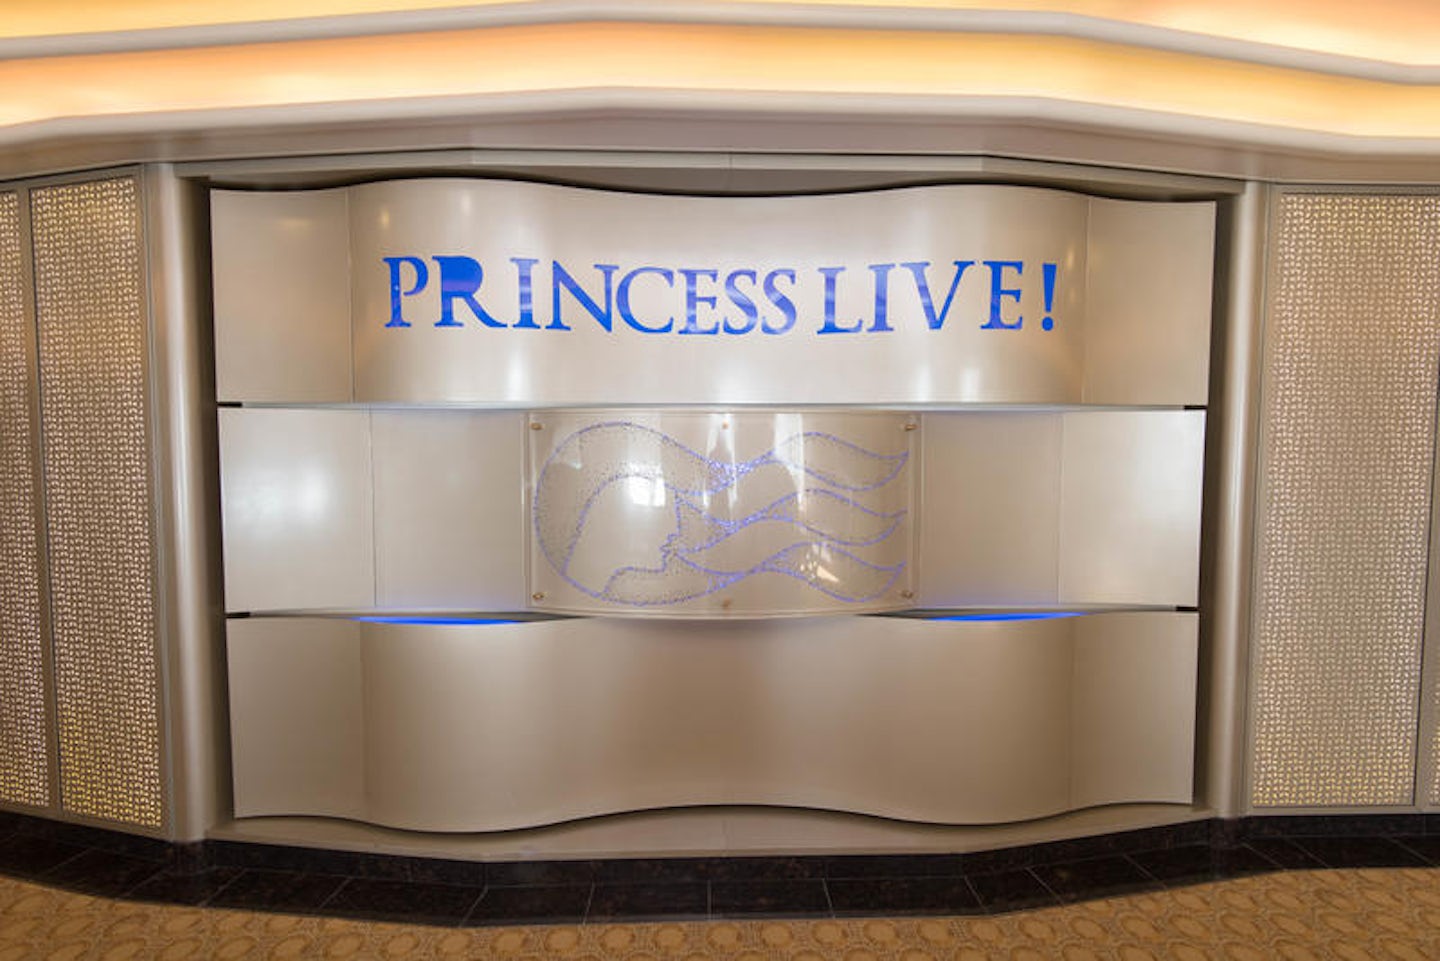 Princess Live Studio on Royal Princess